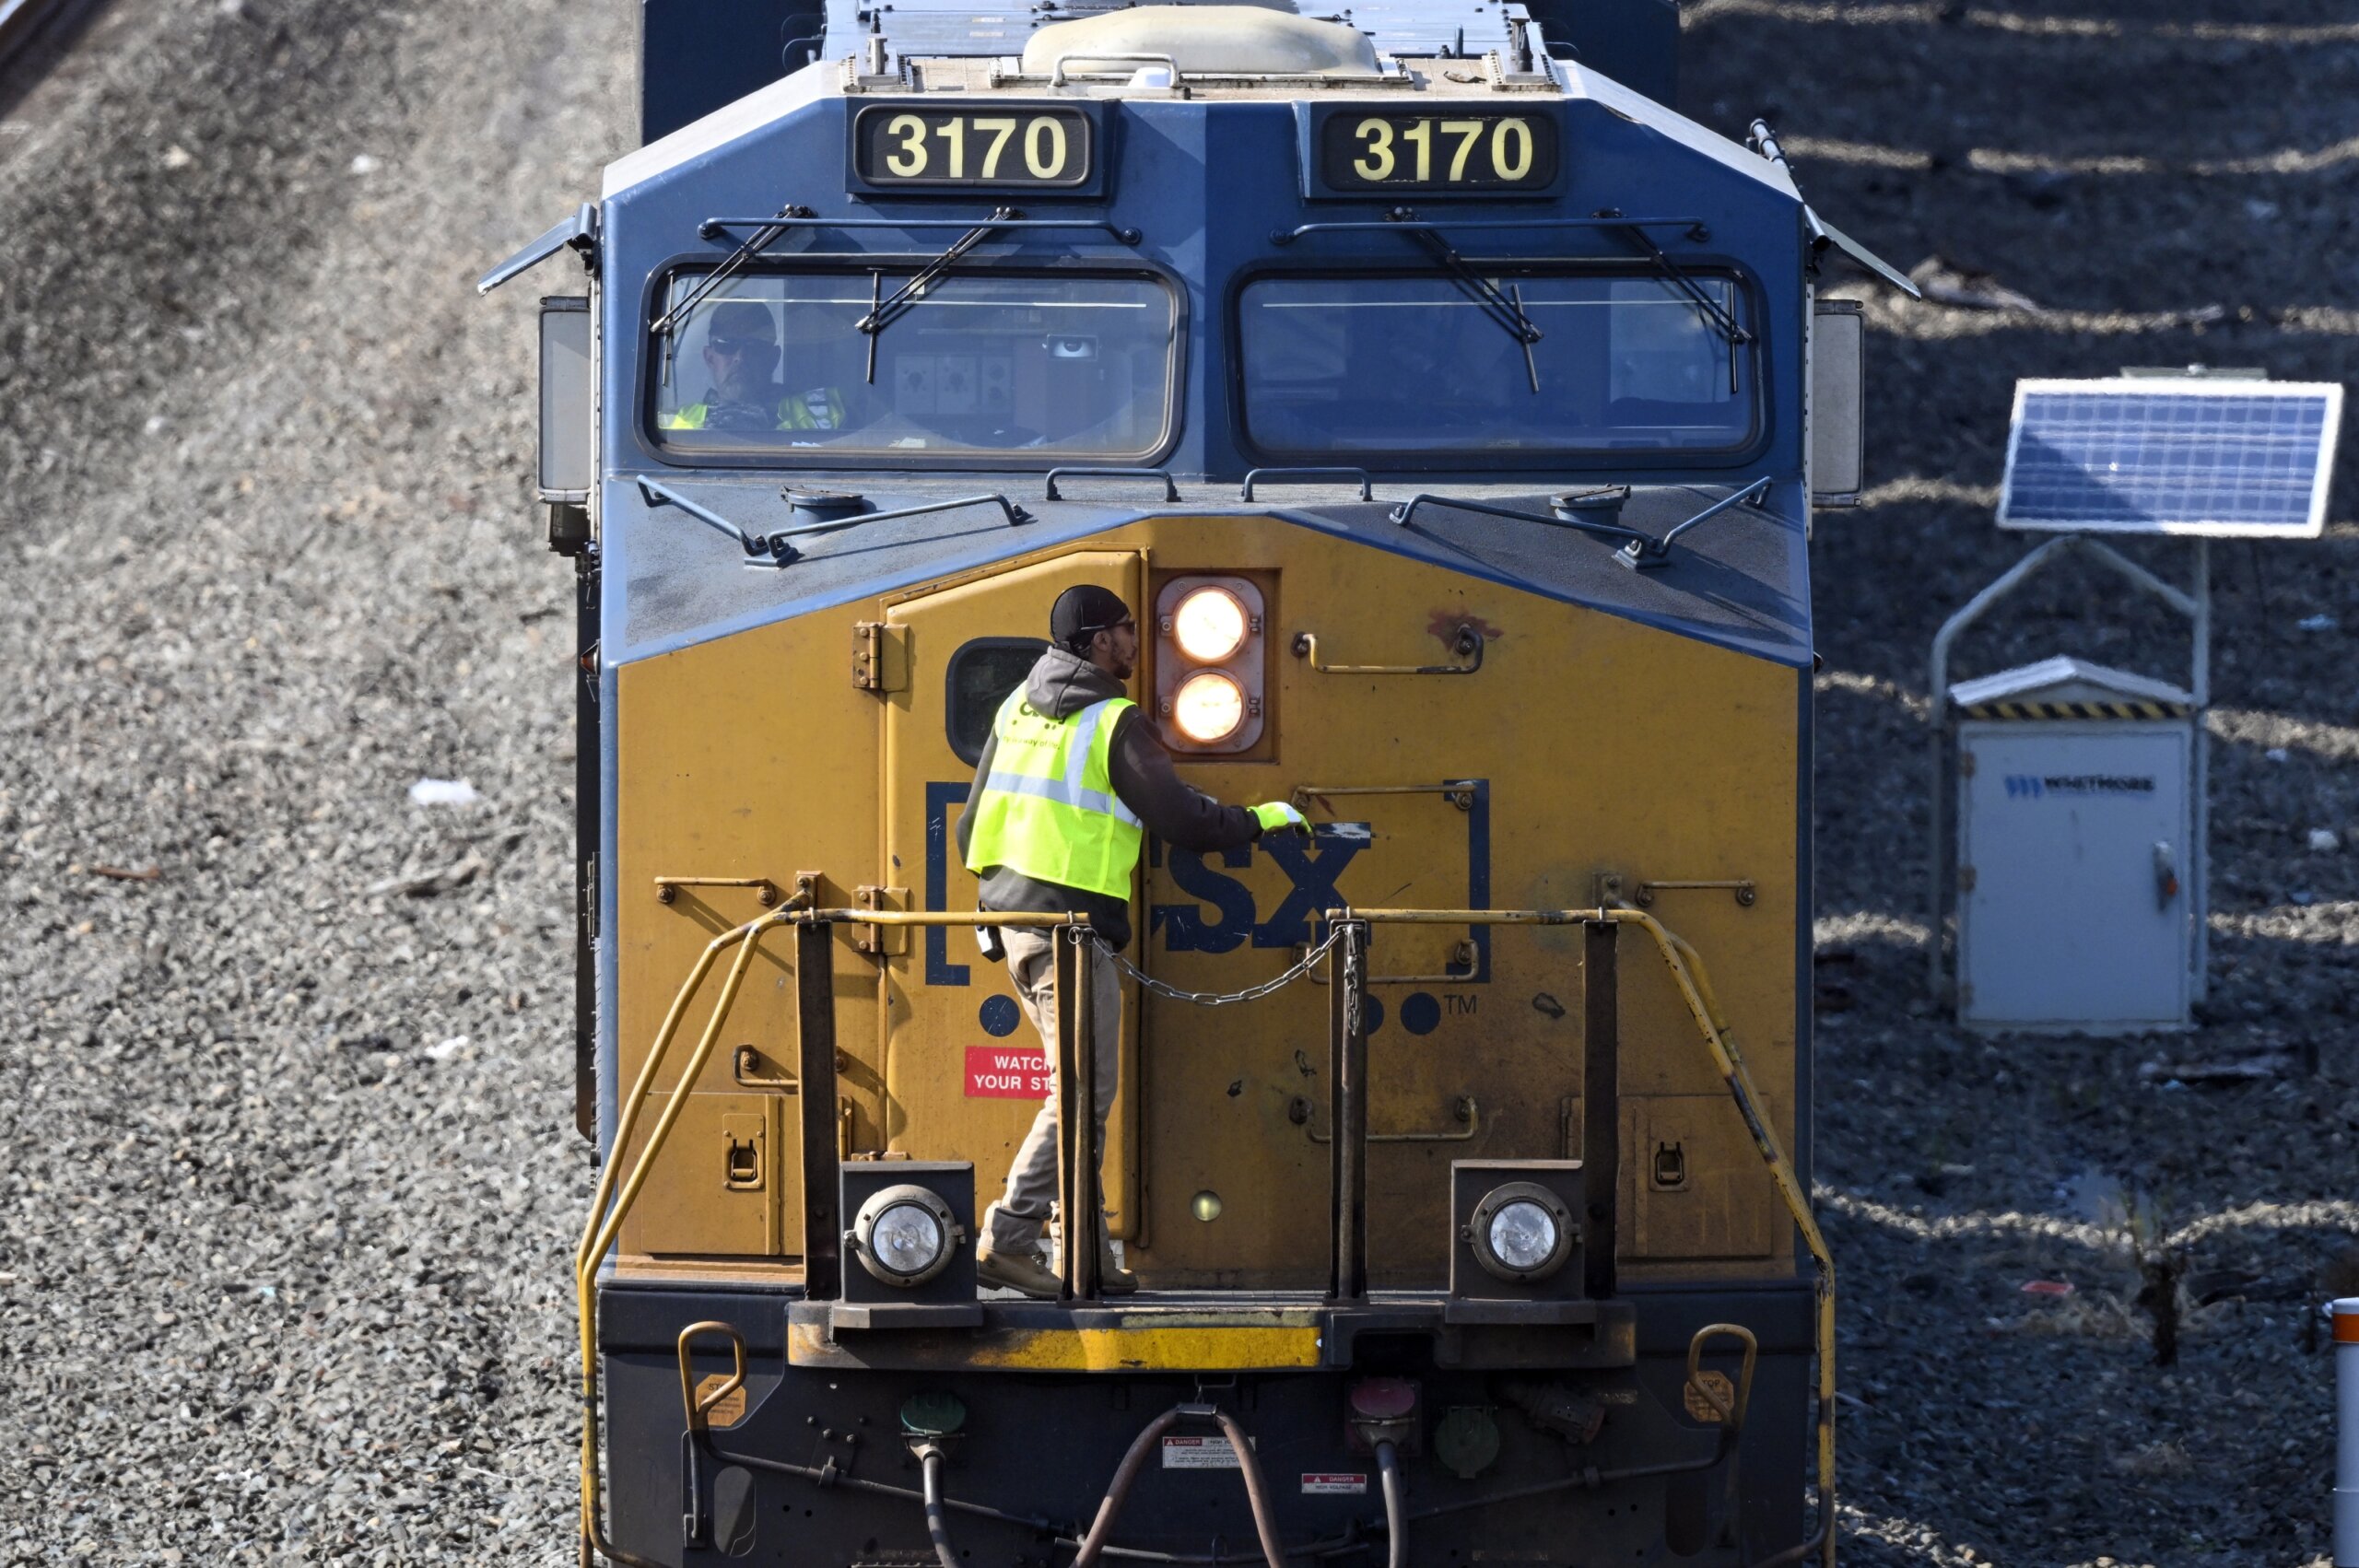 Amid gains, railroaders seeking quality-of-life improvements